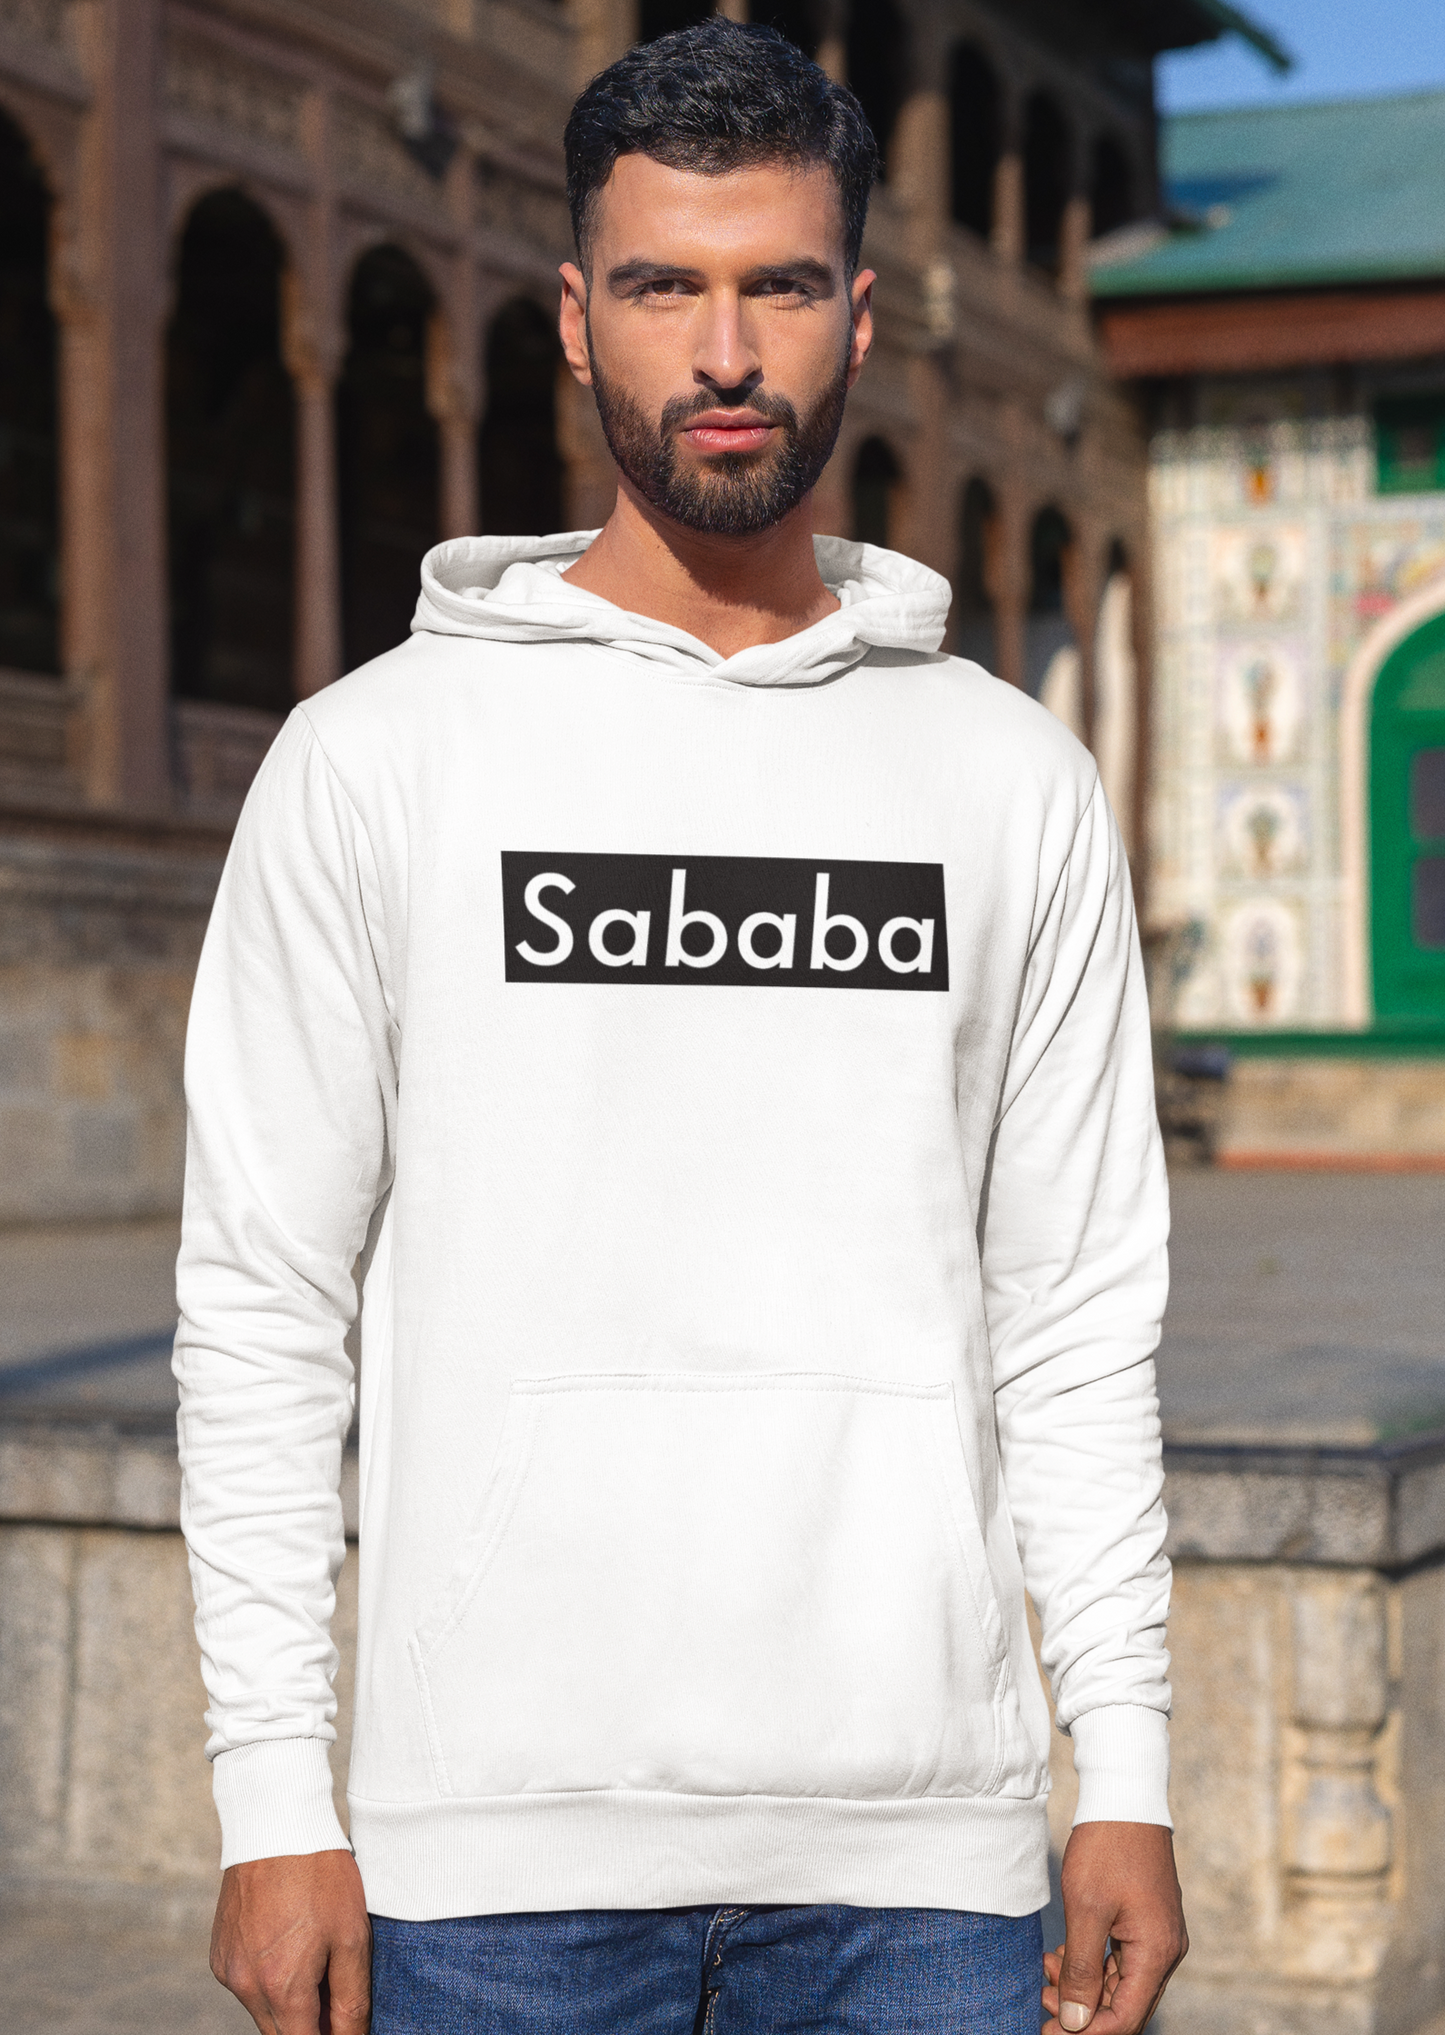 Sababa Logo B&W Men's Premium Hoodie